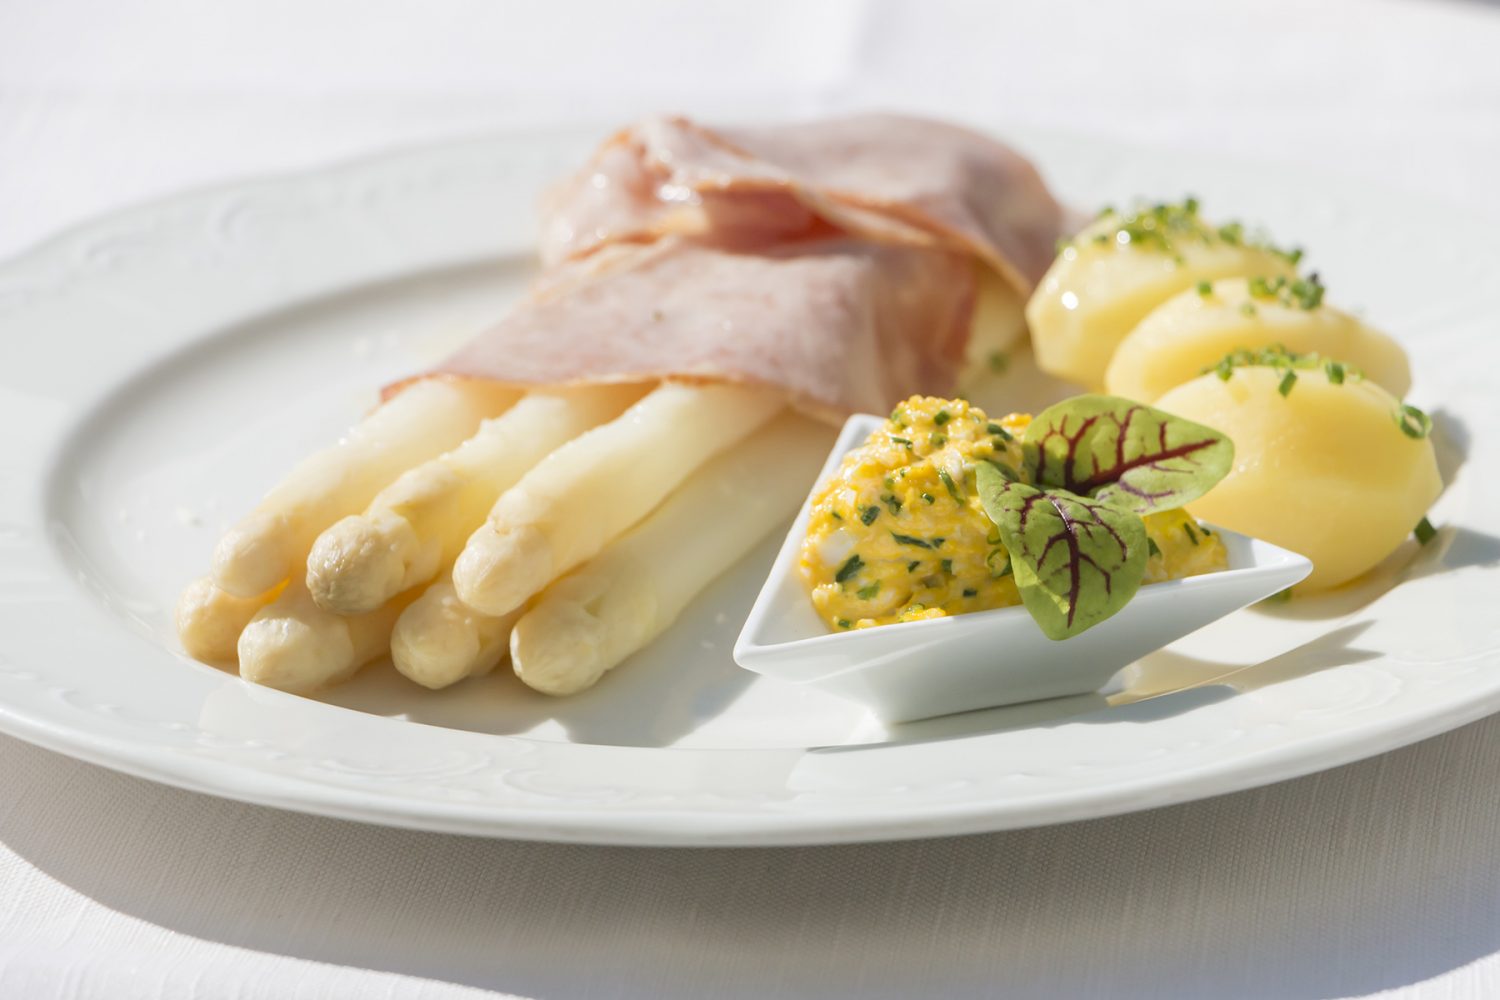 Südtiroler Speisekarte: Spezialitäten aus Südtirol, die man im Urlaub kosten muss